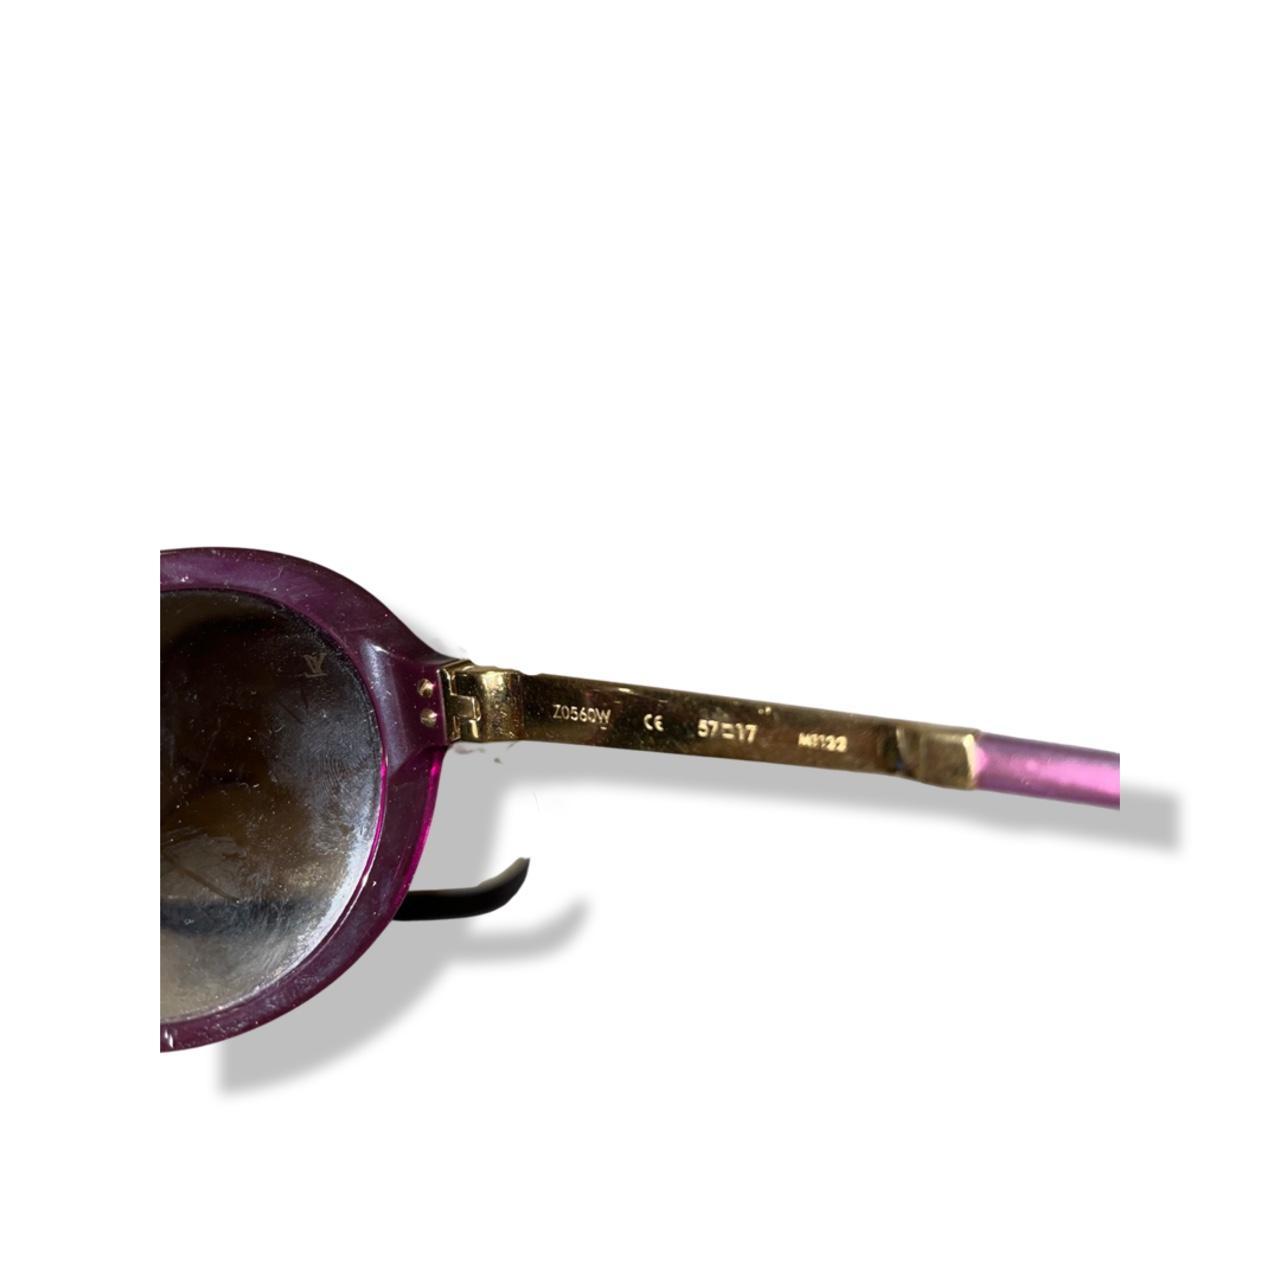 louis vuitton purple sunglasses